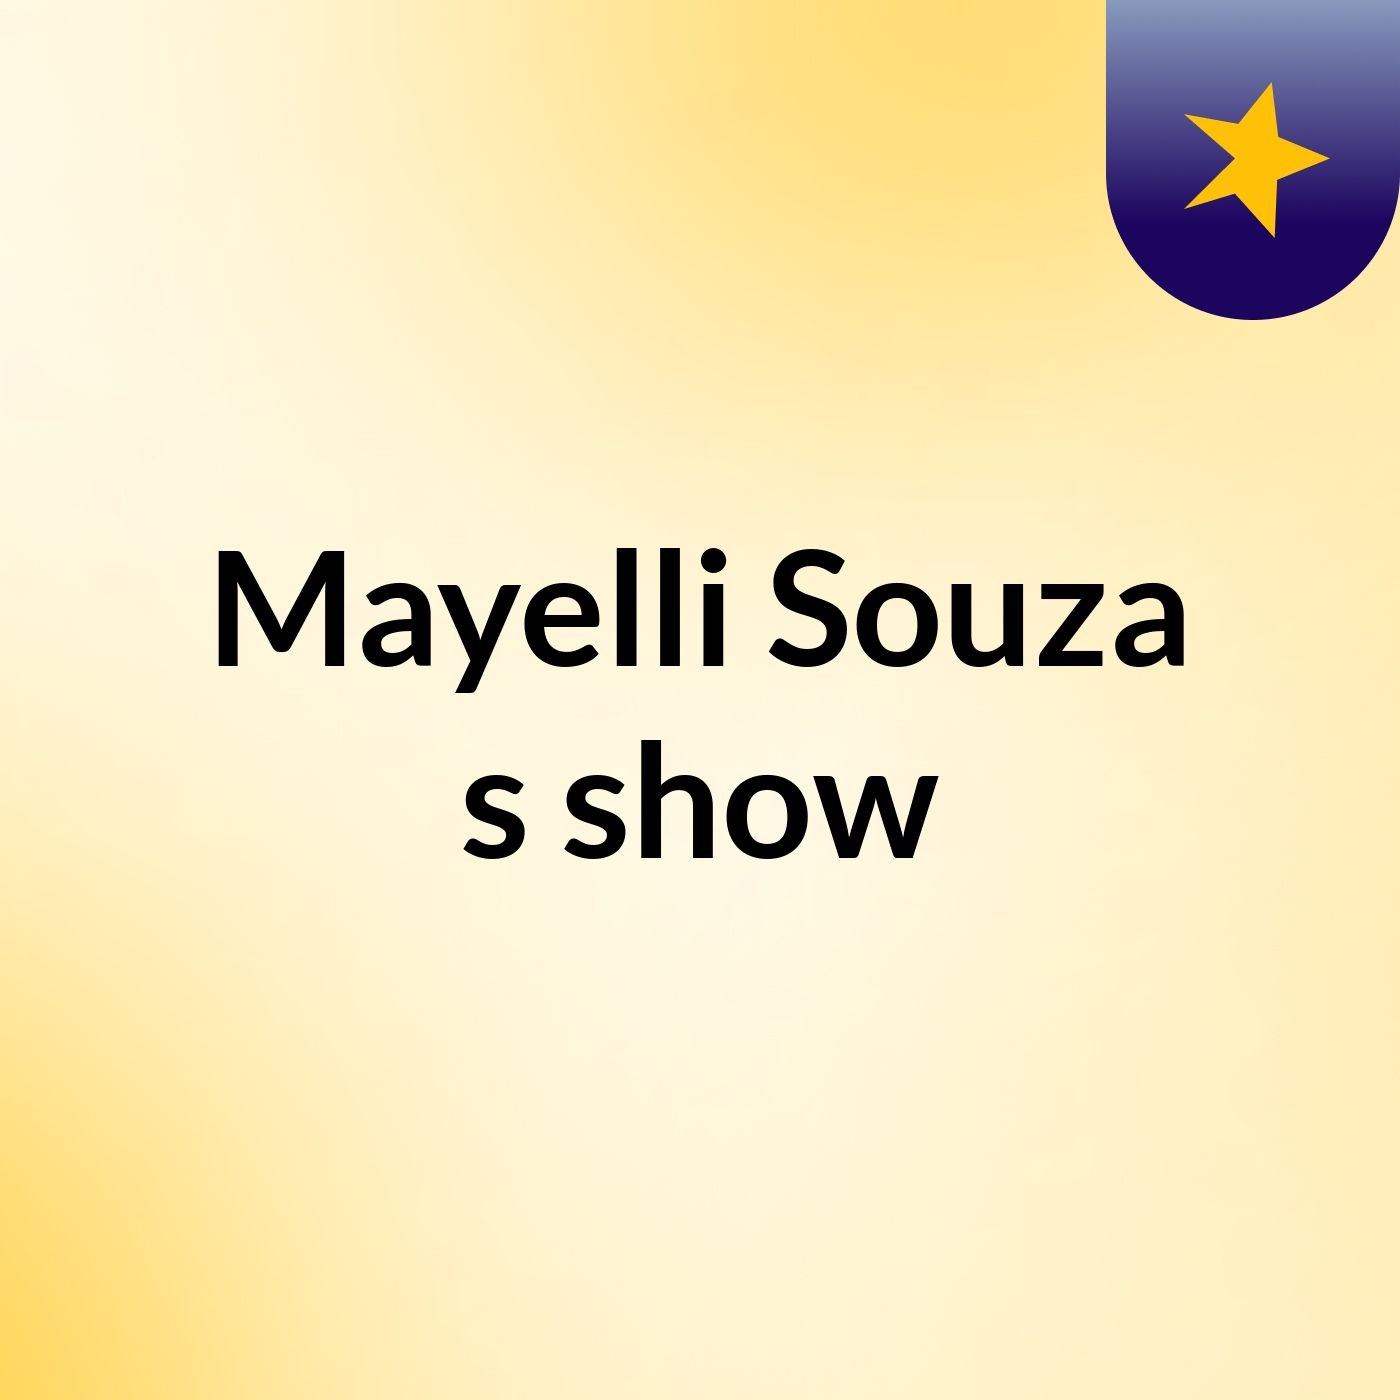 Mayelli Souza's show